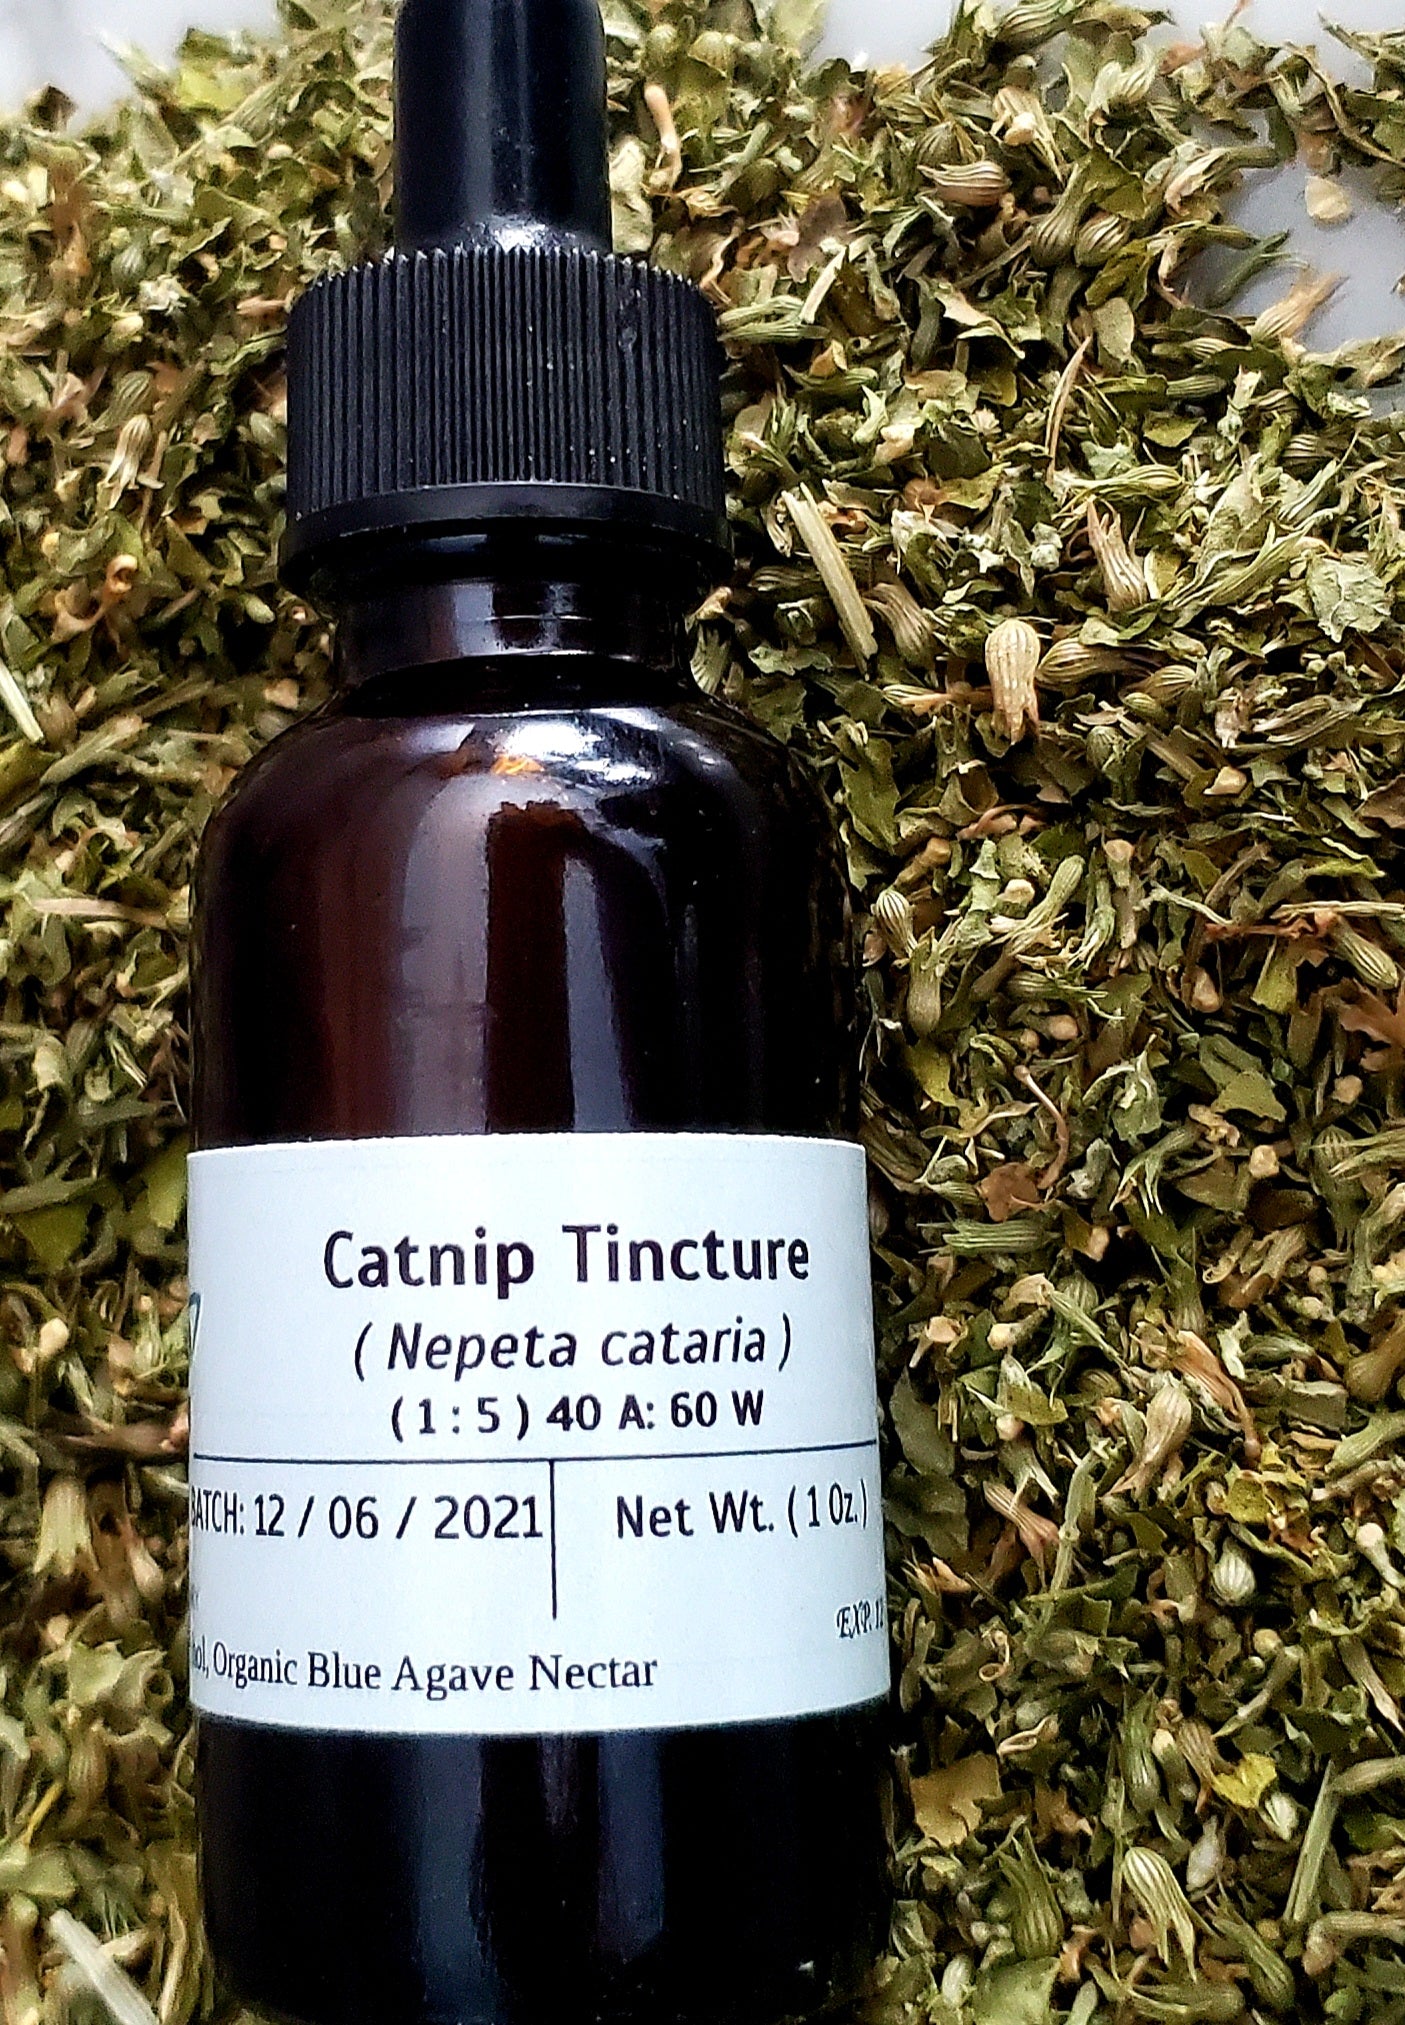 Catnip Tincture (Nepeta cataria)